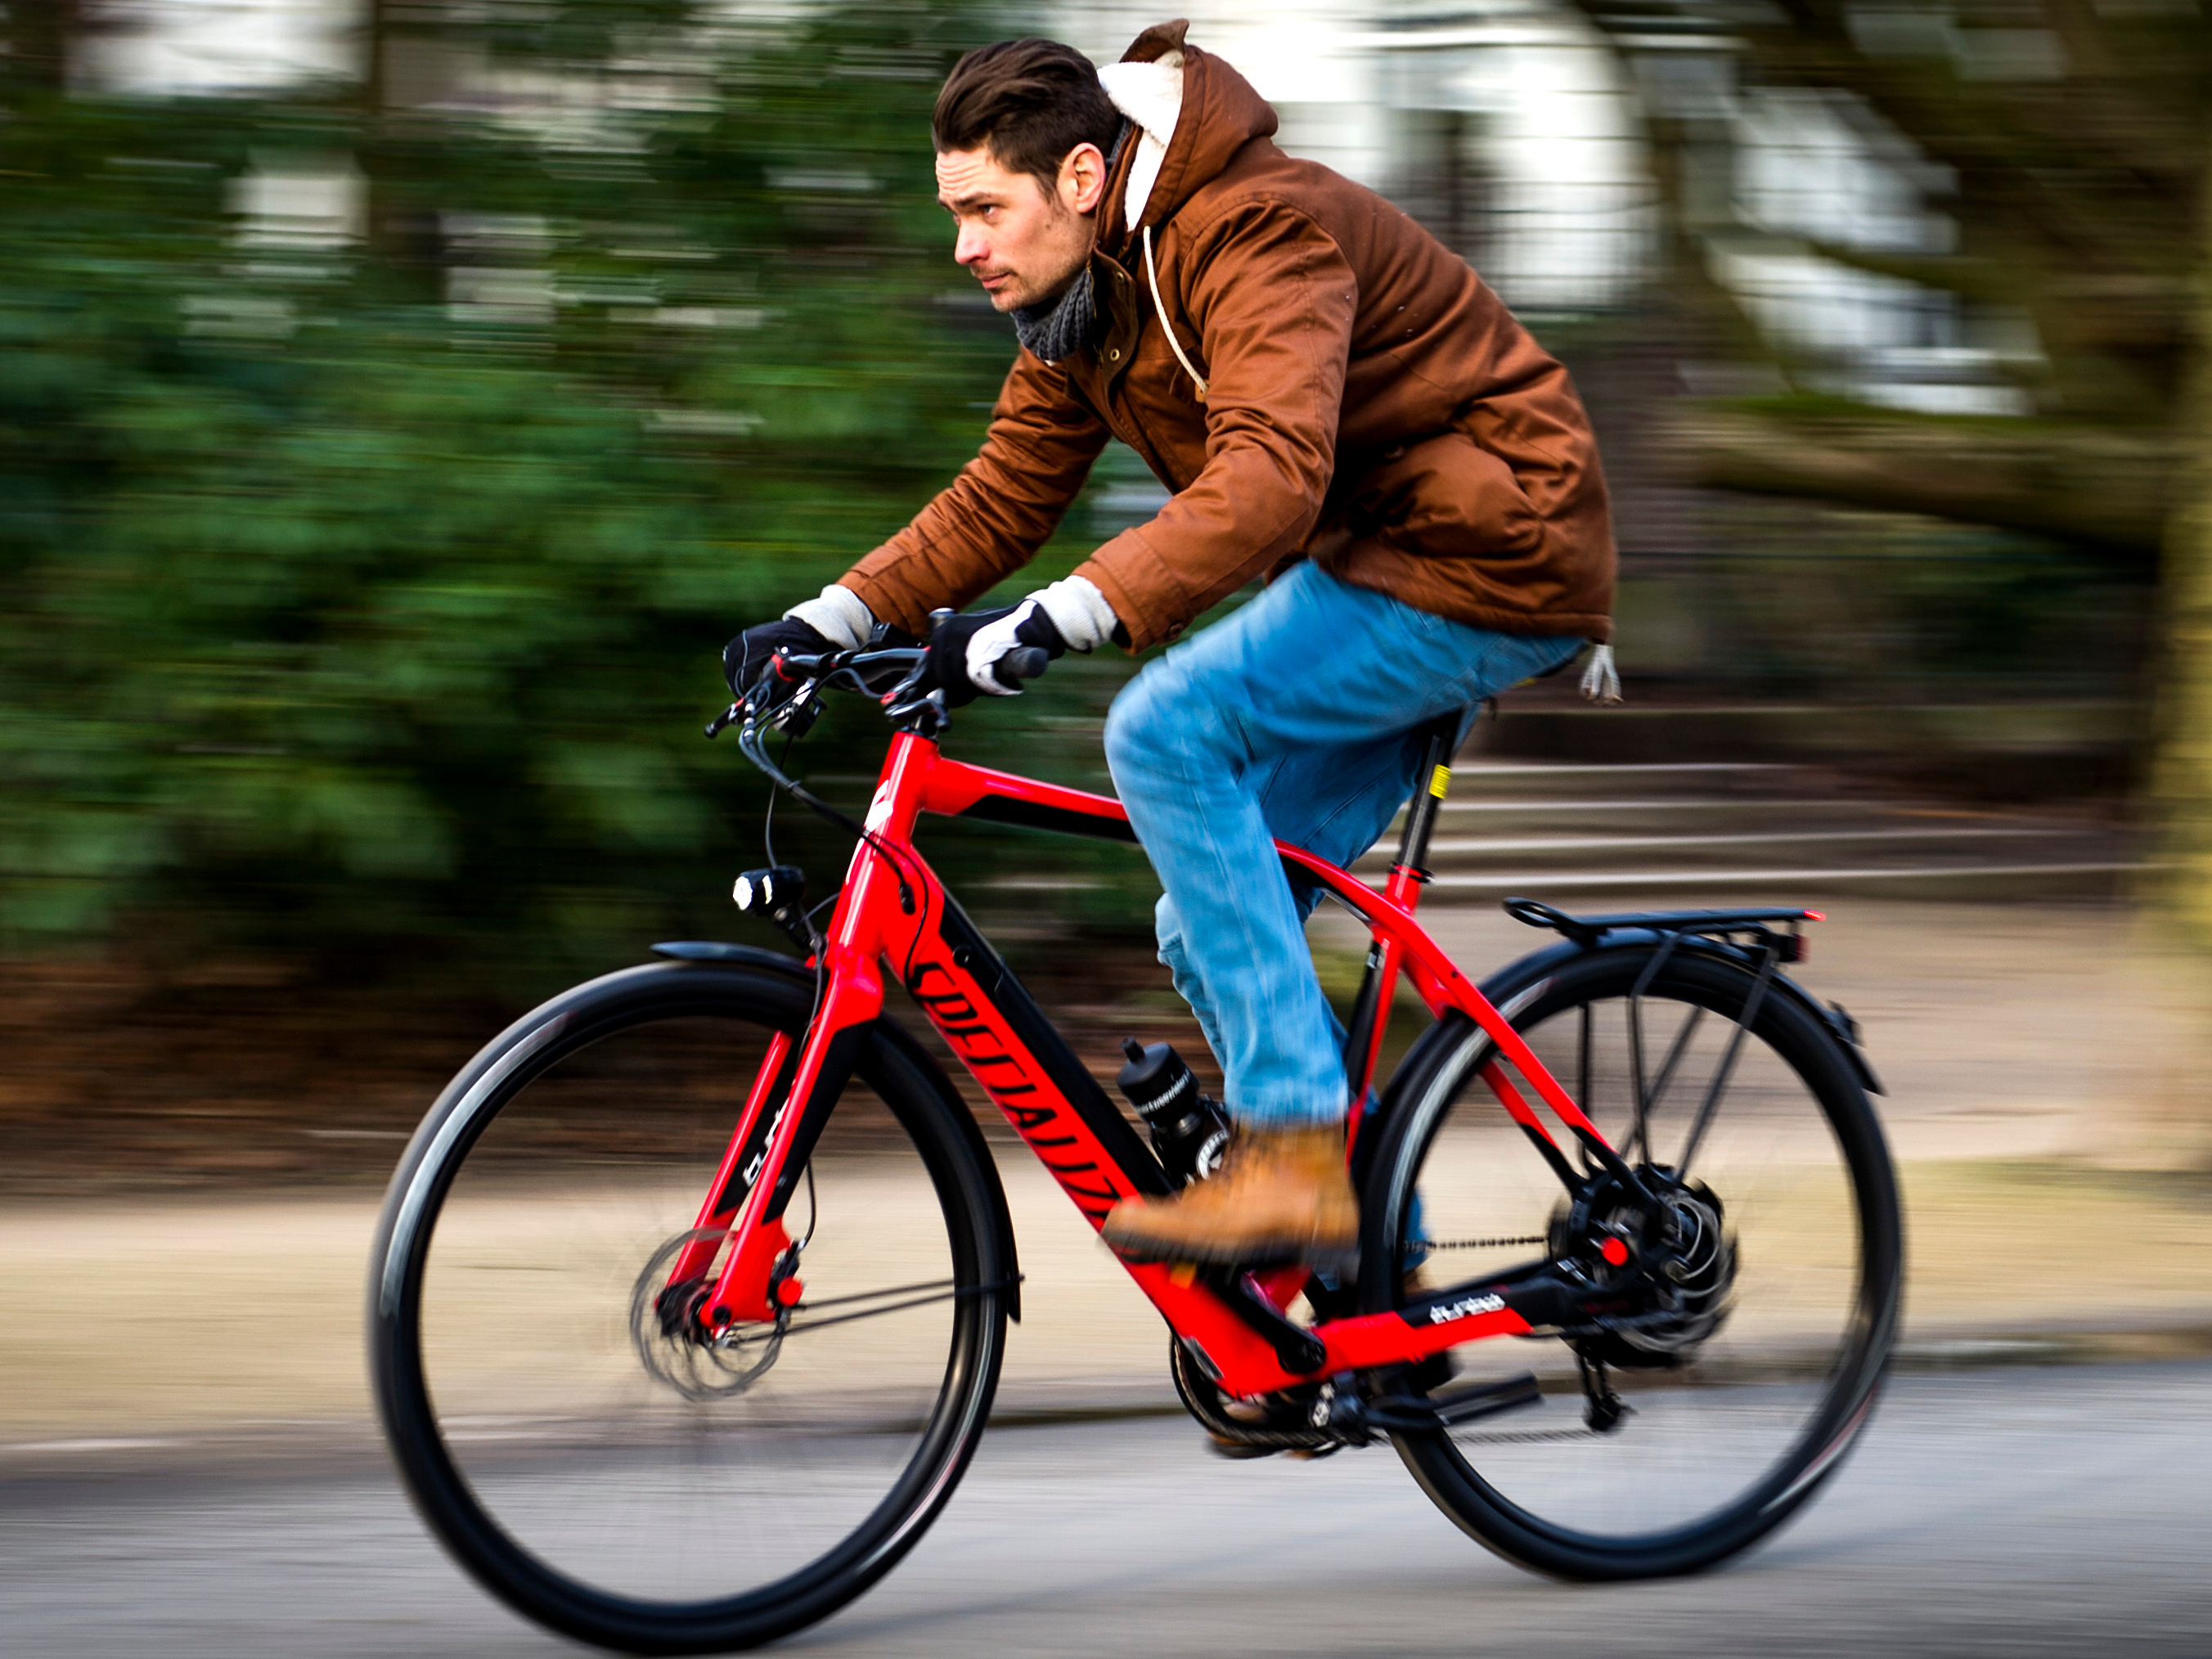 De speed pedelec, een sportieve elektrische fiets die 45 km per uur haalt.